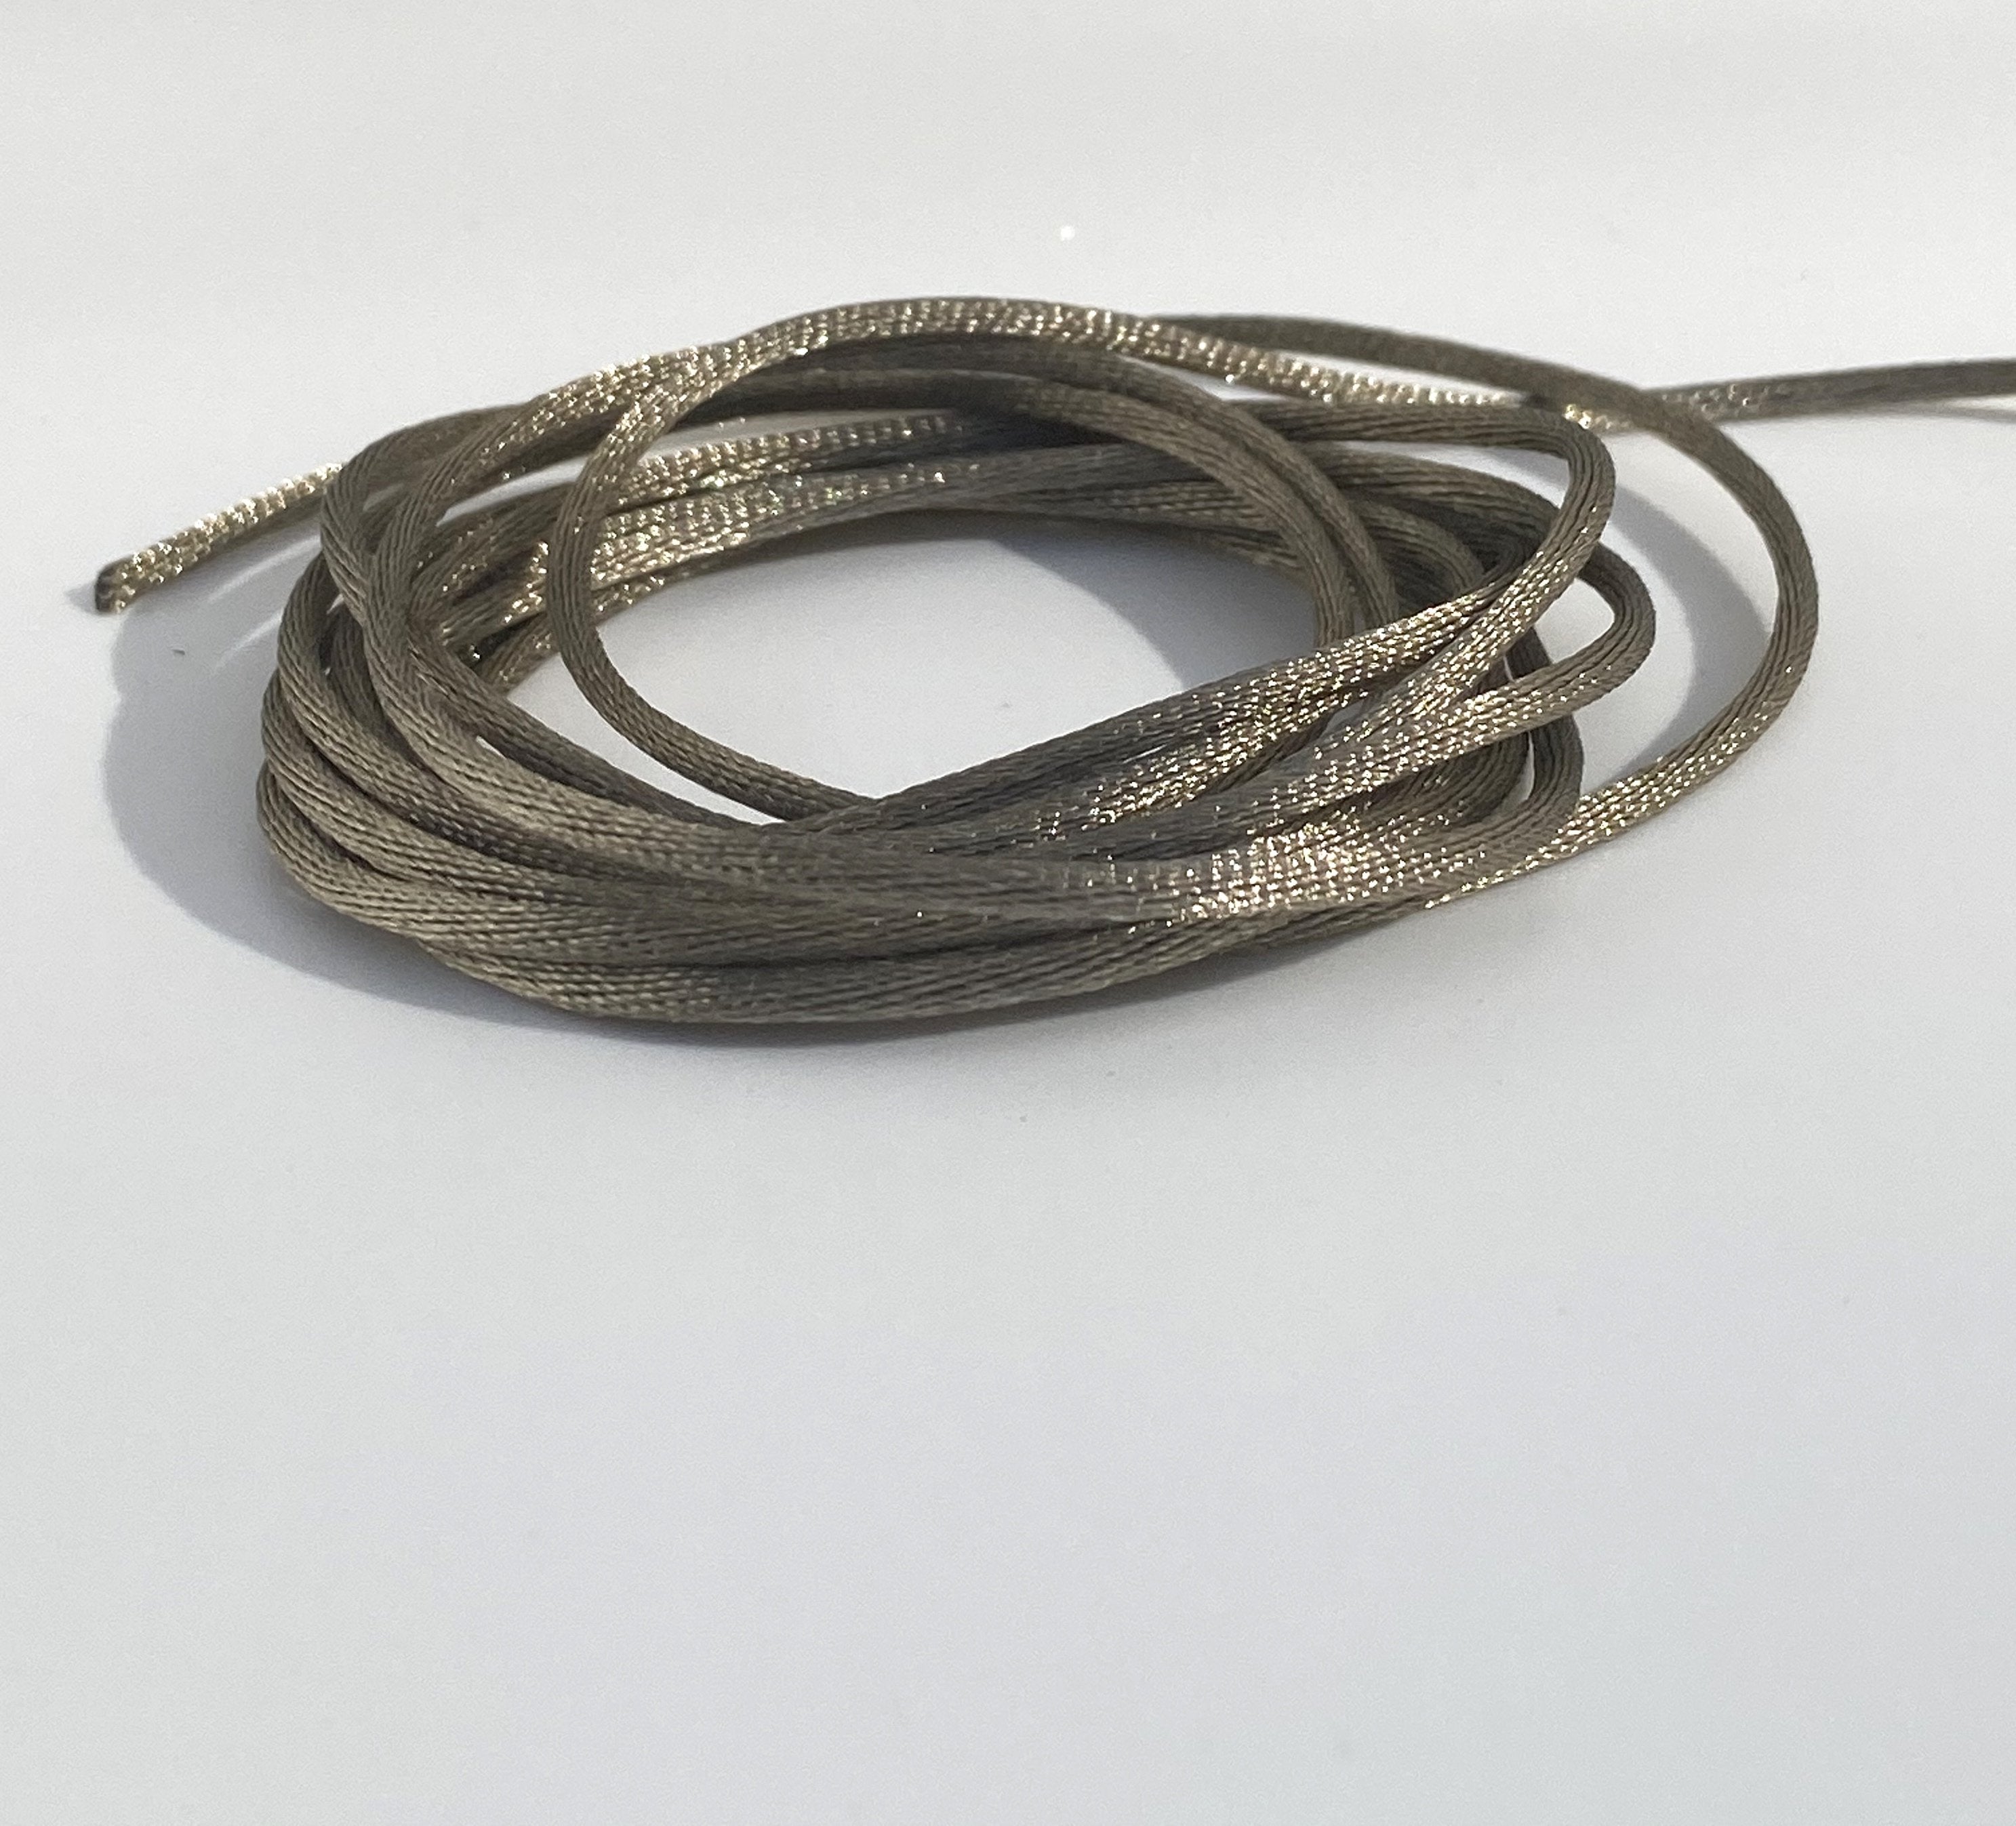 The Field Cord Bracelet